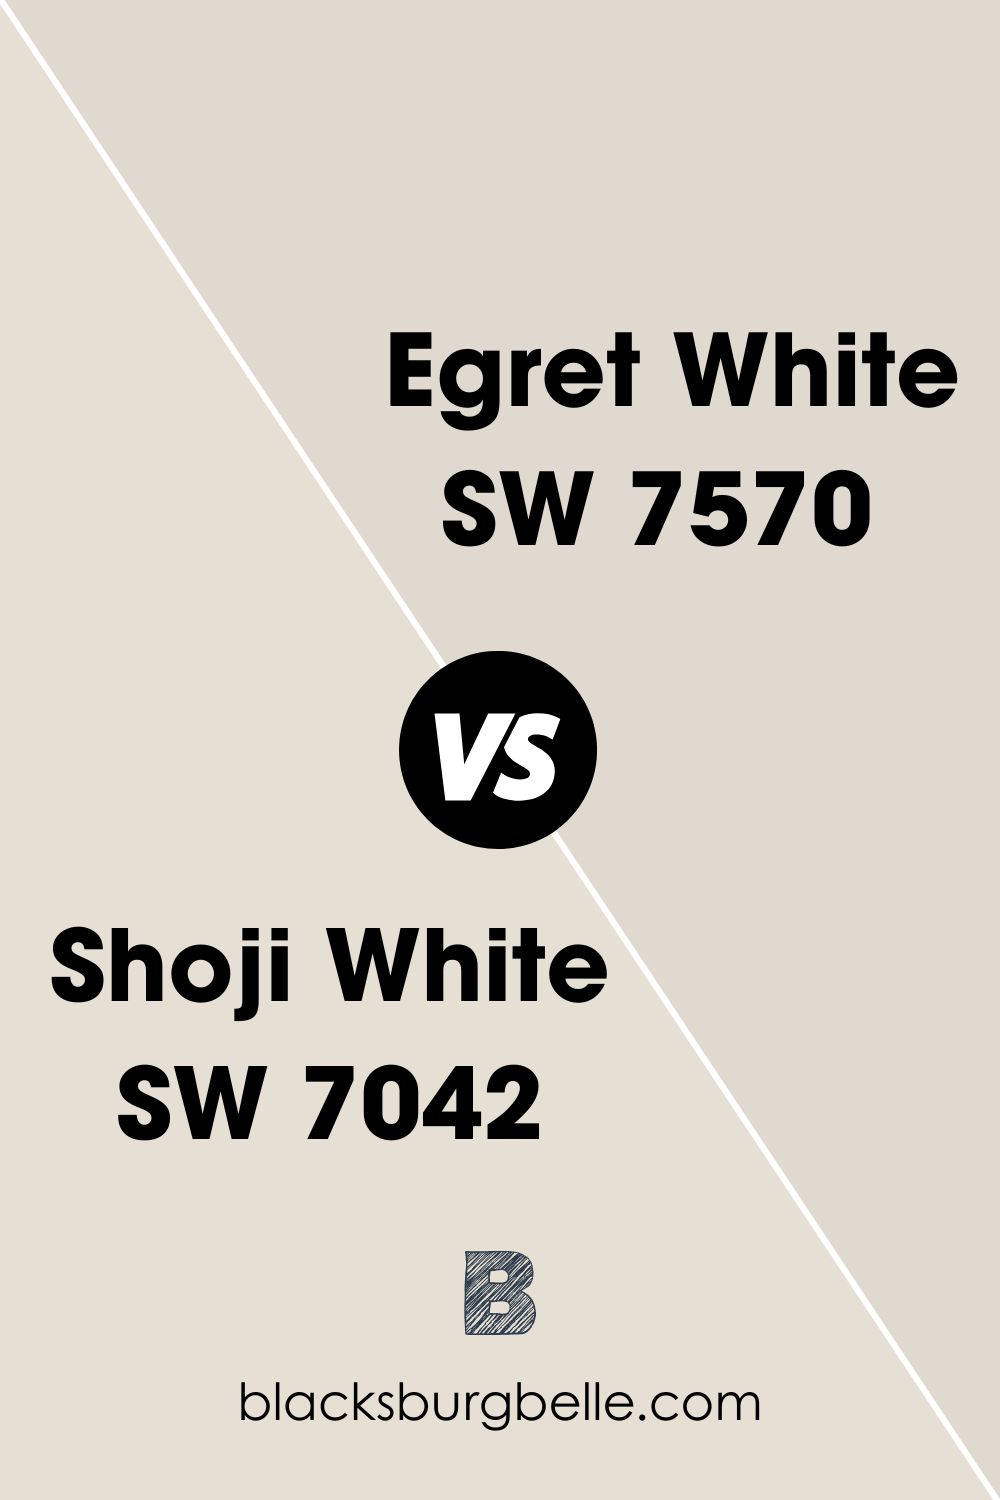 Shoji White SW 7042 